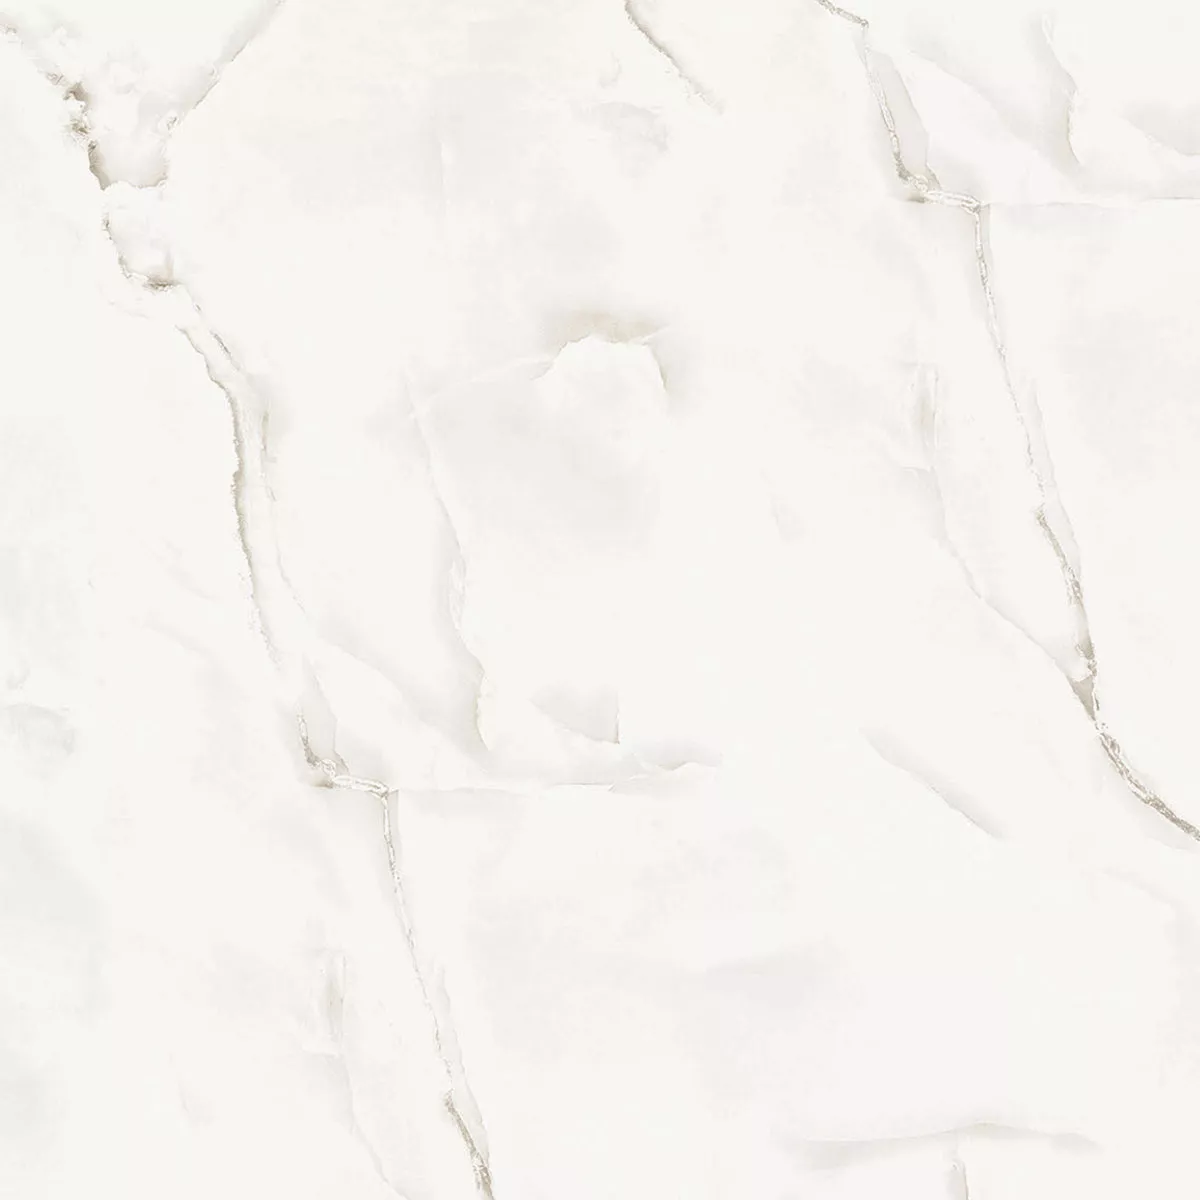 Πλακάκια Δαπέδου Konza Μαρμάρινη Όψη Αμεμπτος Αστραφτερό Ασπρο 120x120cm